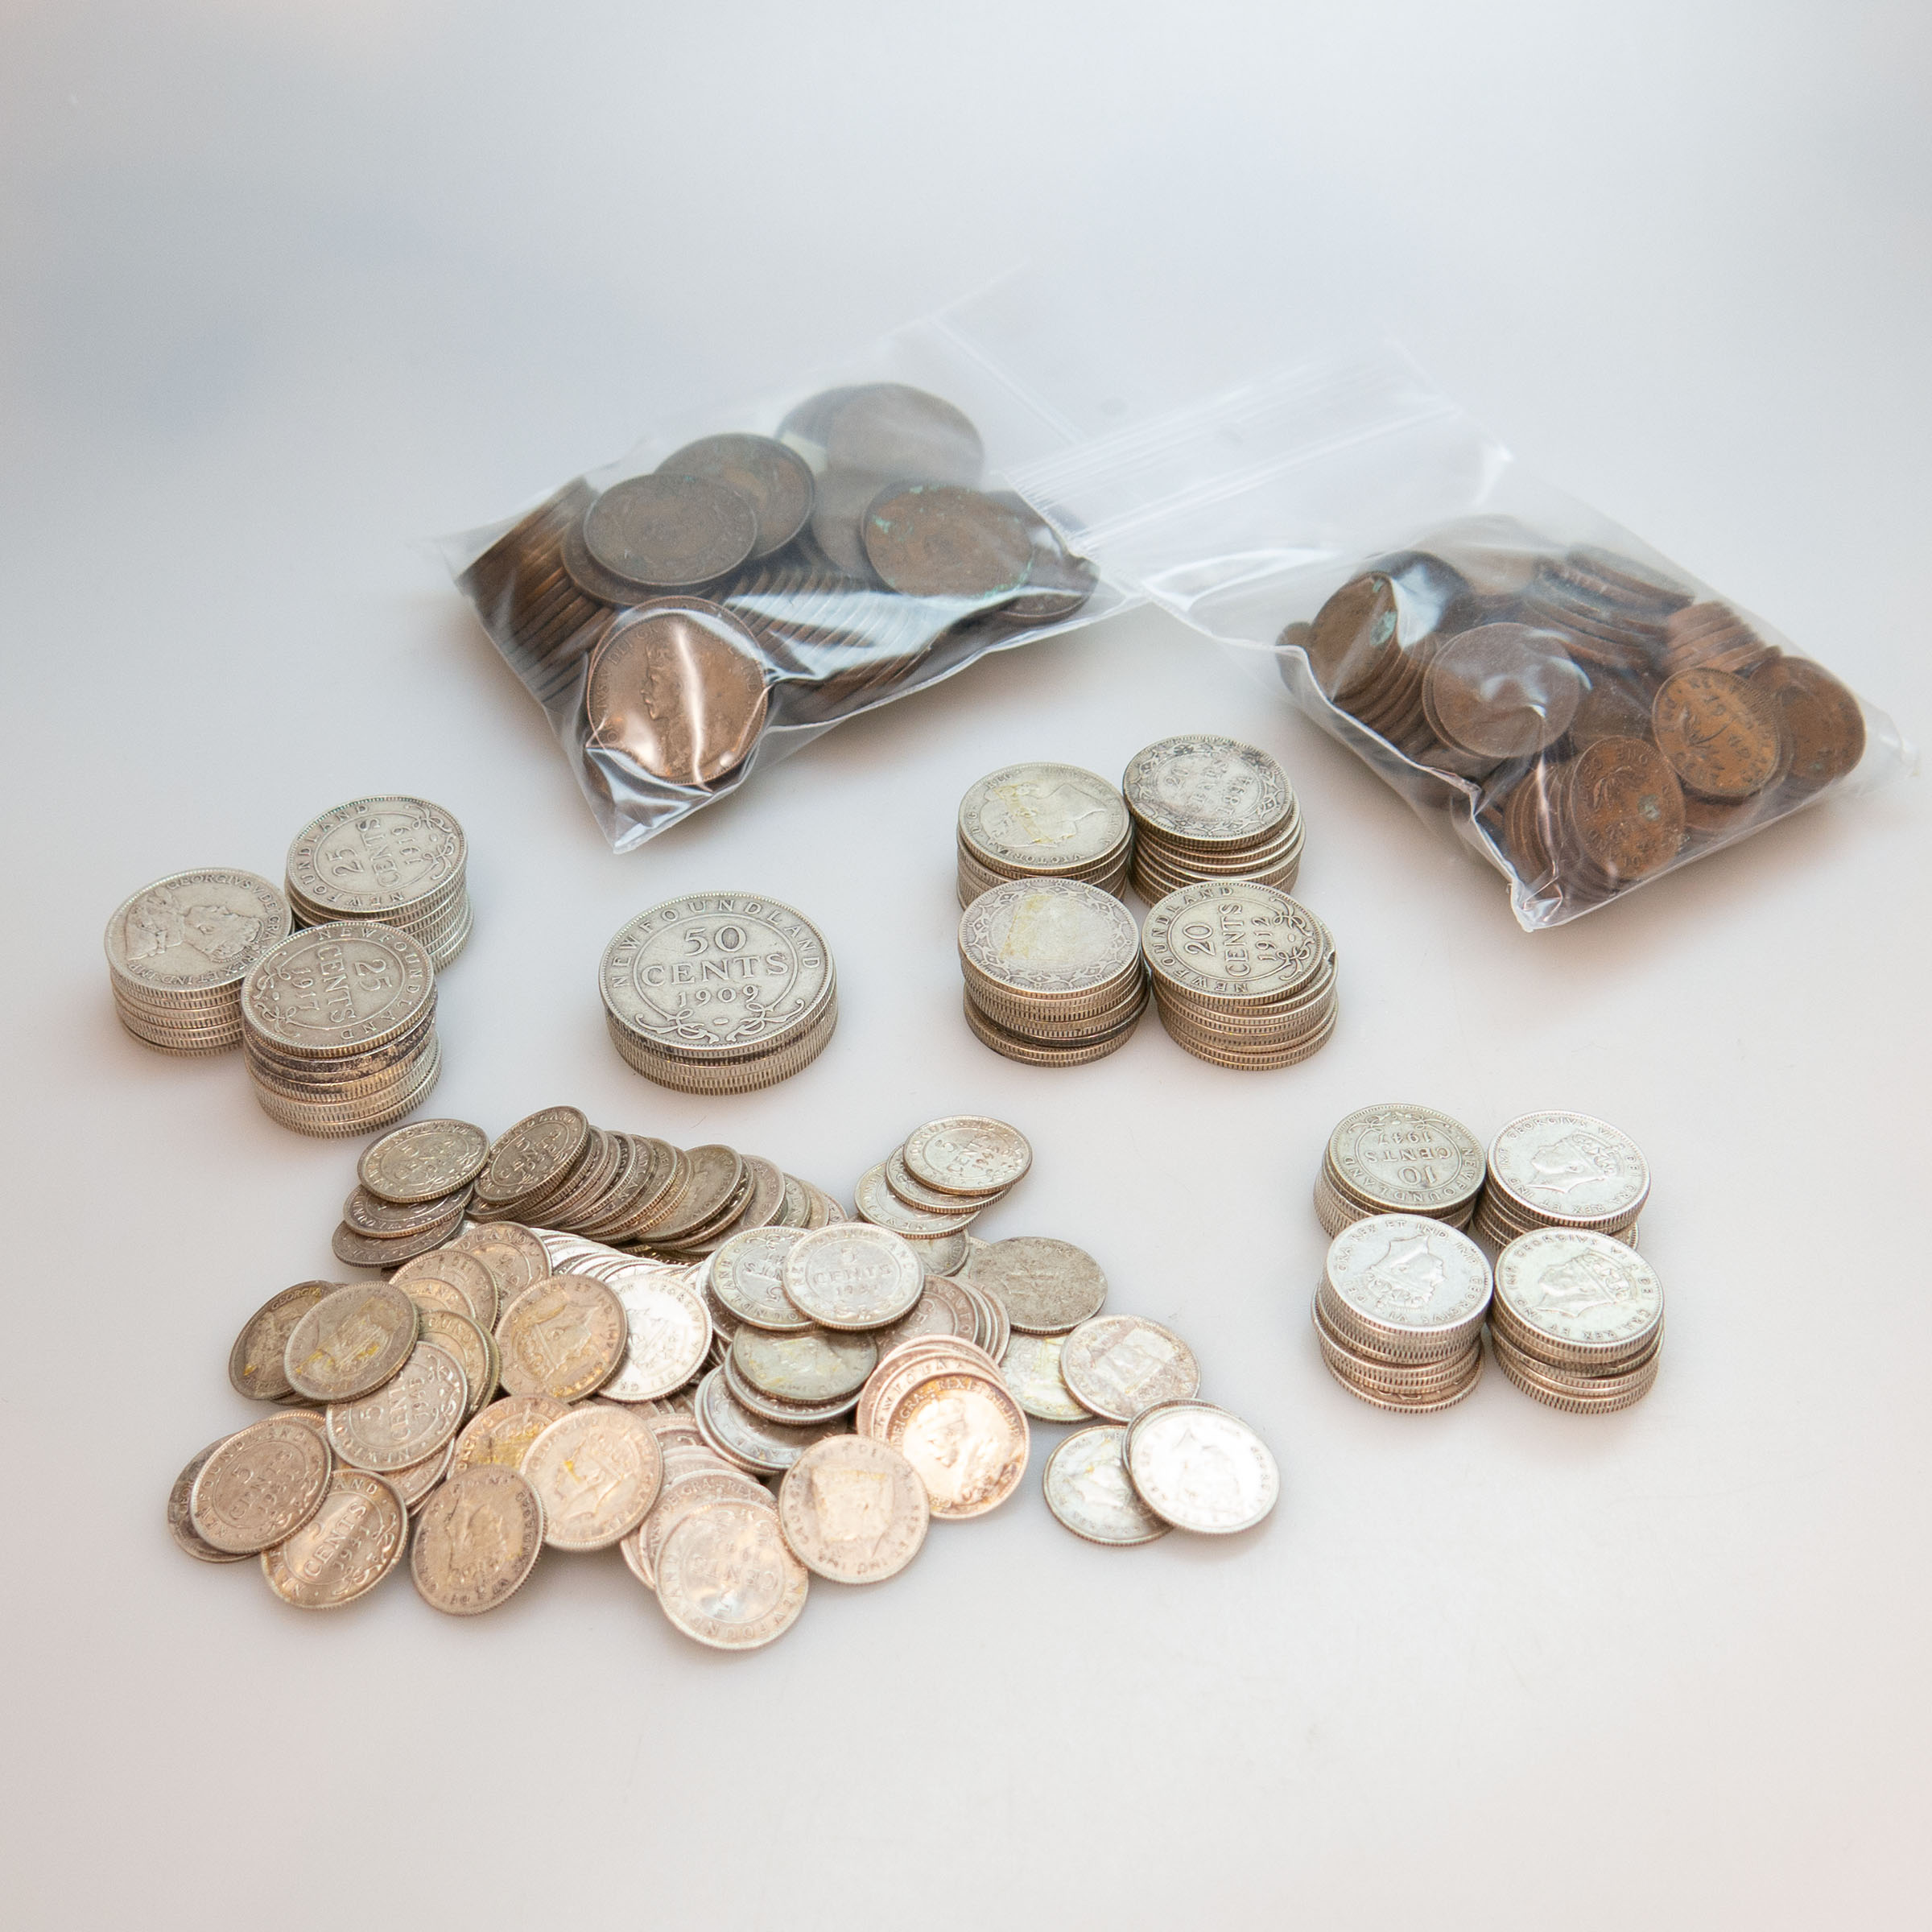 Quantity Of Newfoundland Coins